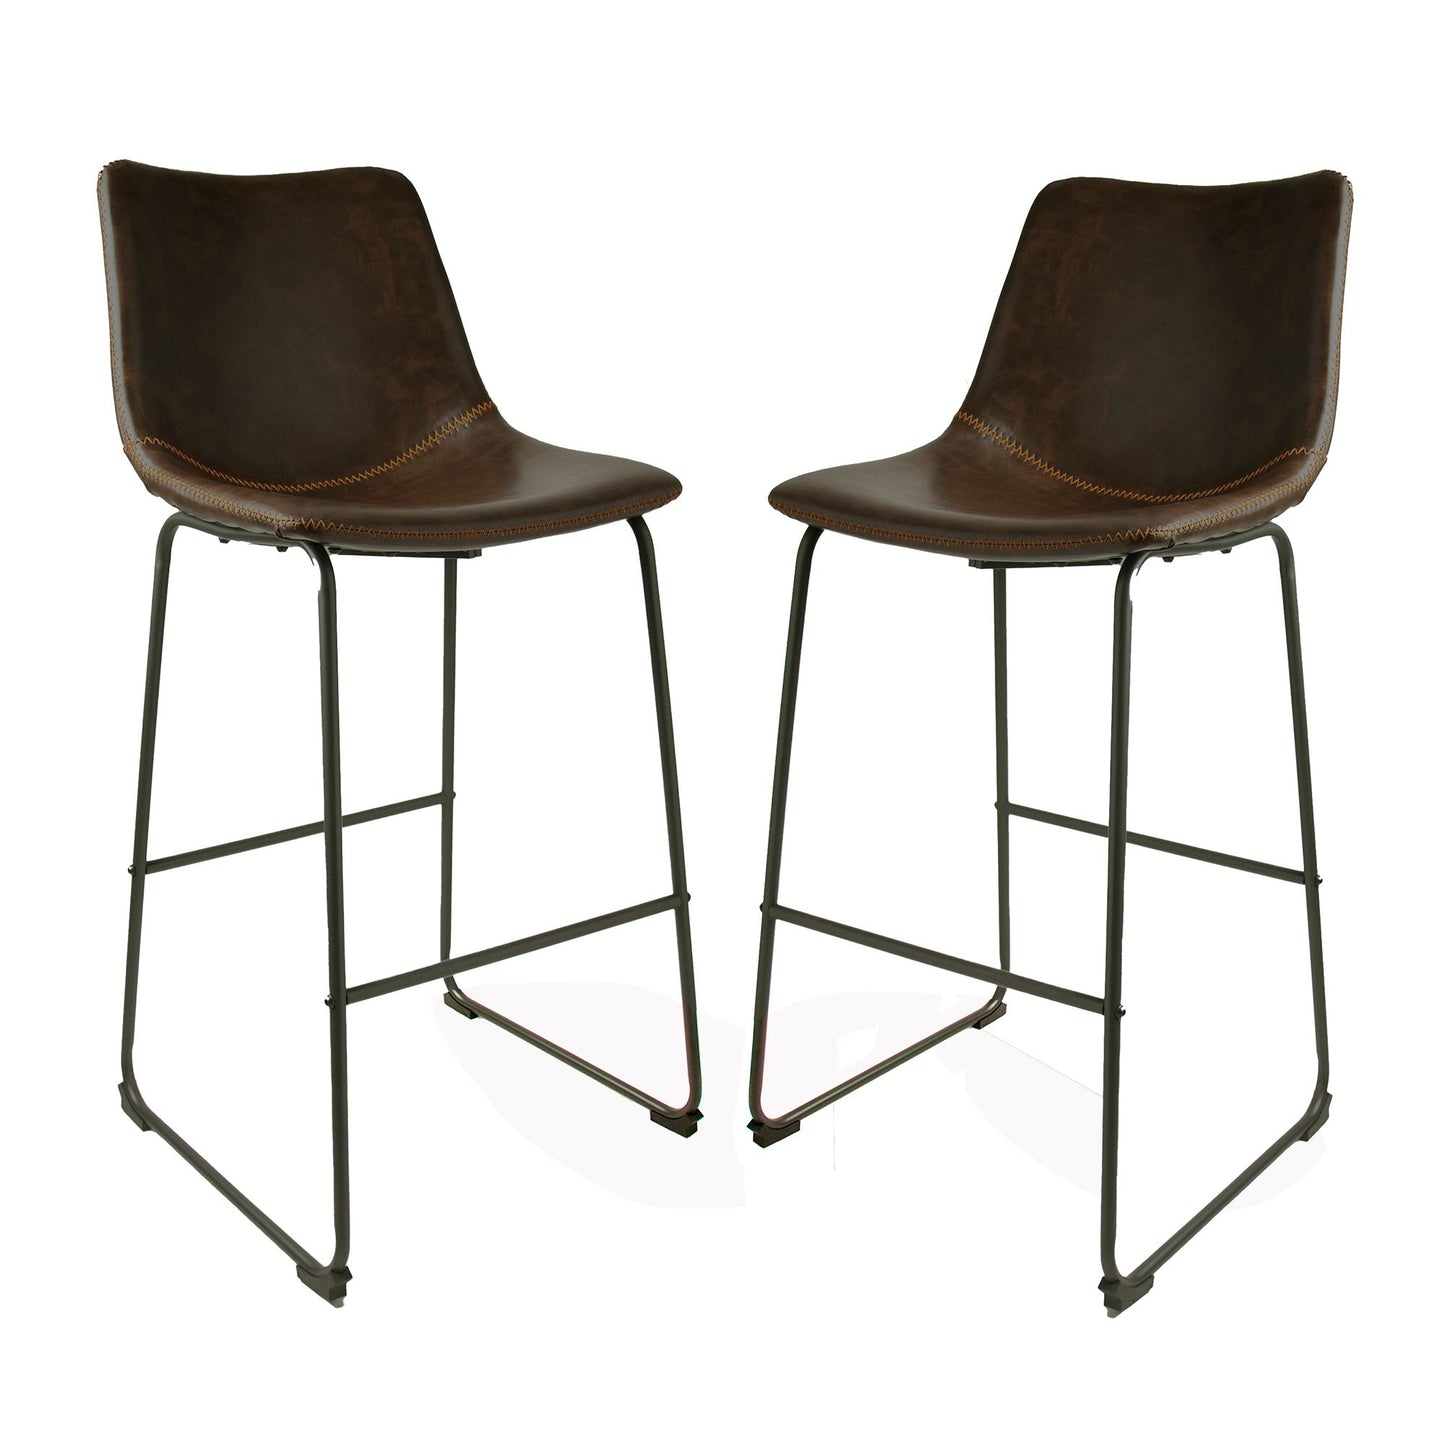 Pair of Cooper chestnut bar stools